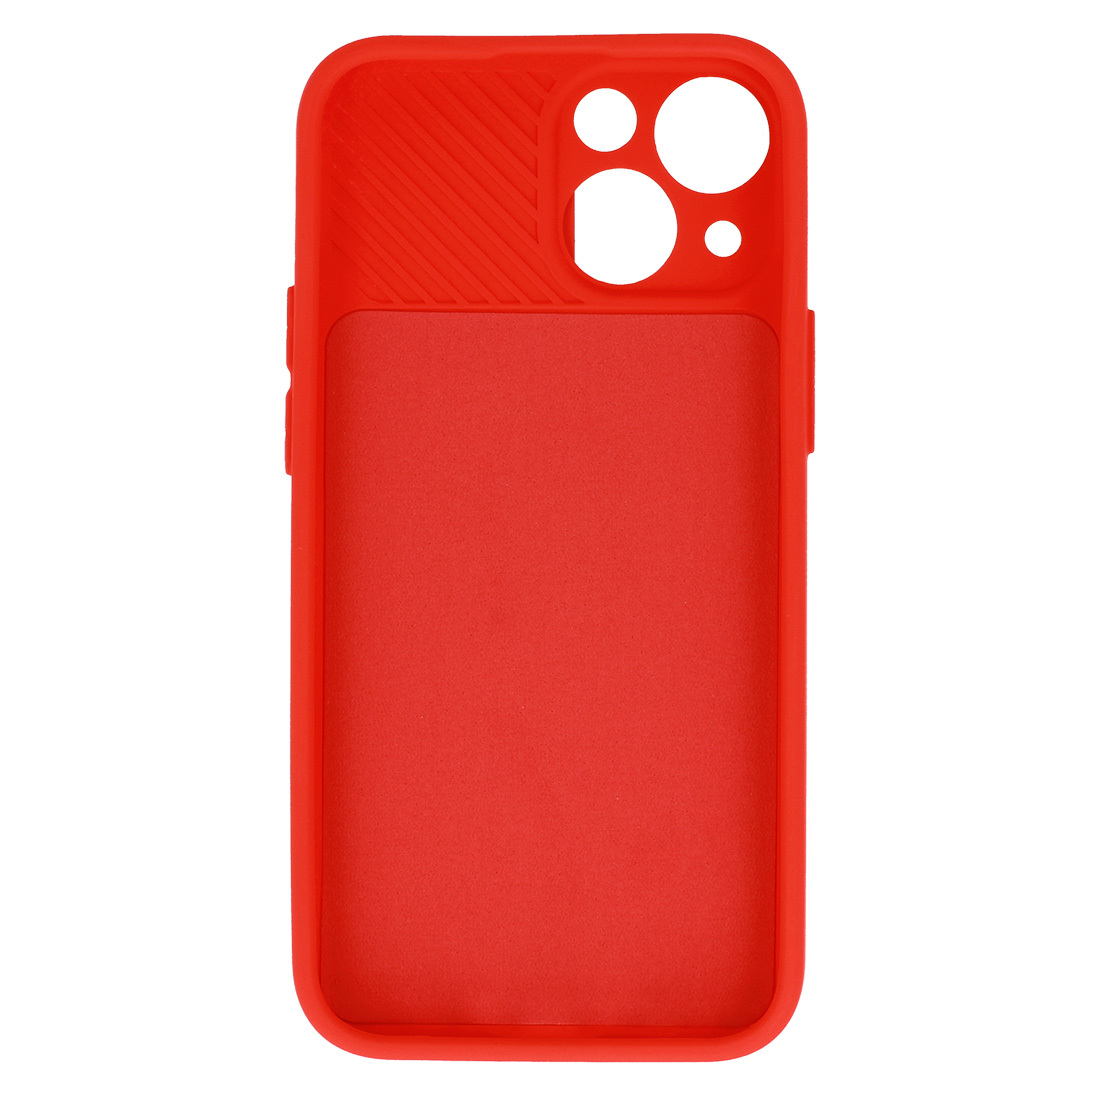 Pokrowiec etui z elastycznego TPU Camshield Soft Case czerwone APPLE iPhone 11 / 5